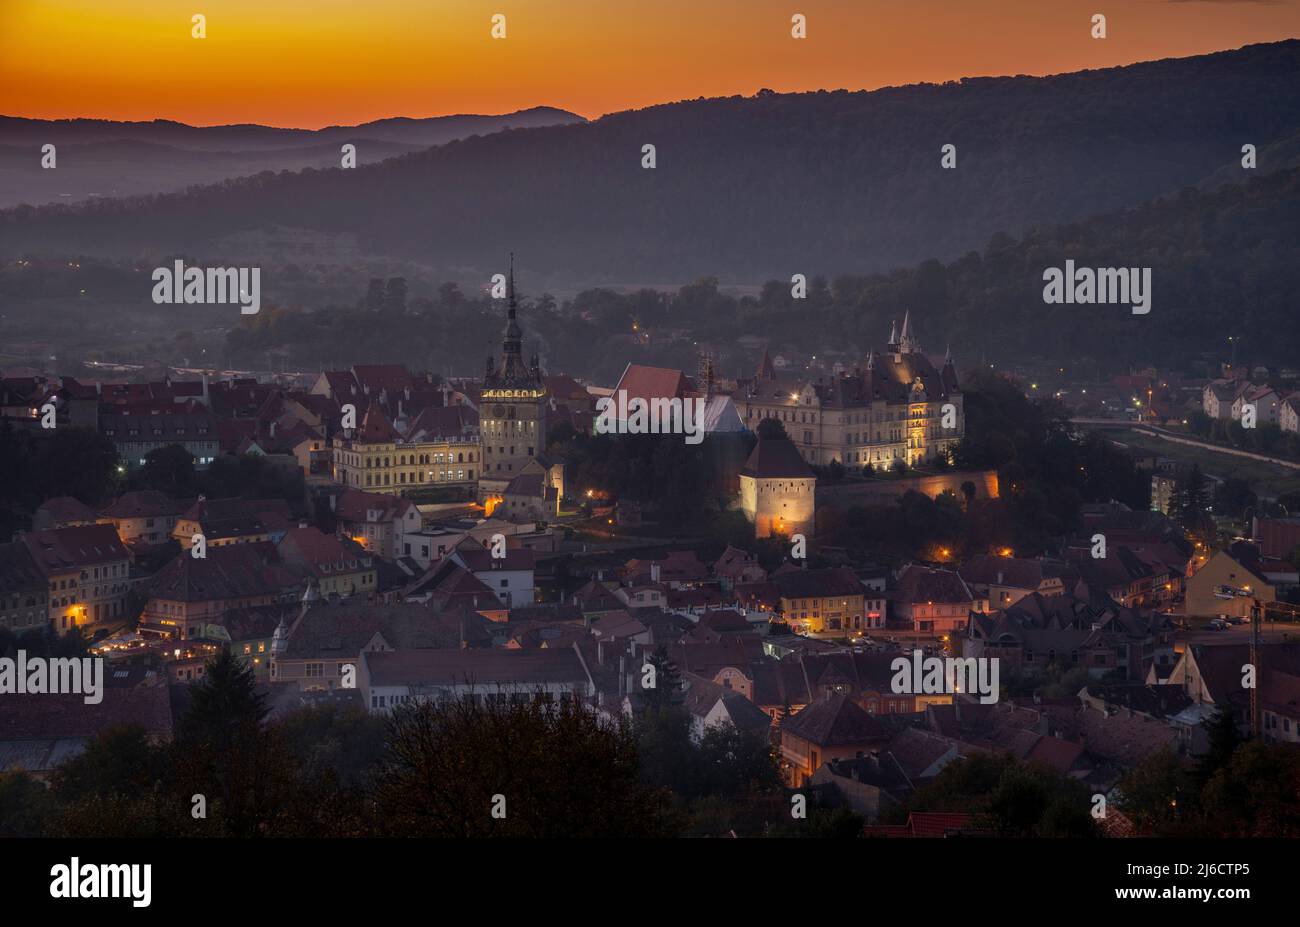 Die mittelalterliche sächsische siebenbürgische Stadt Sighișoara, am Abend. Rumänien. Stockfoto